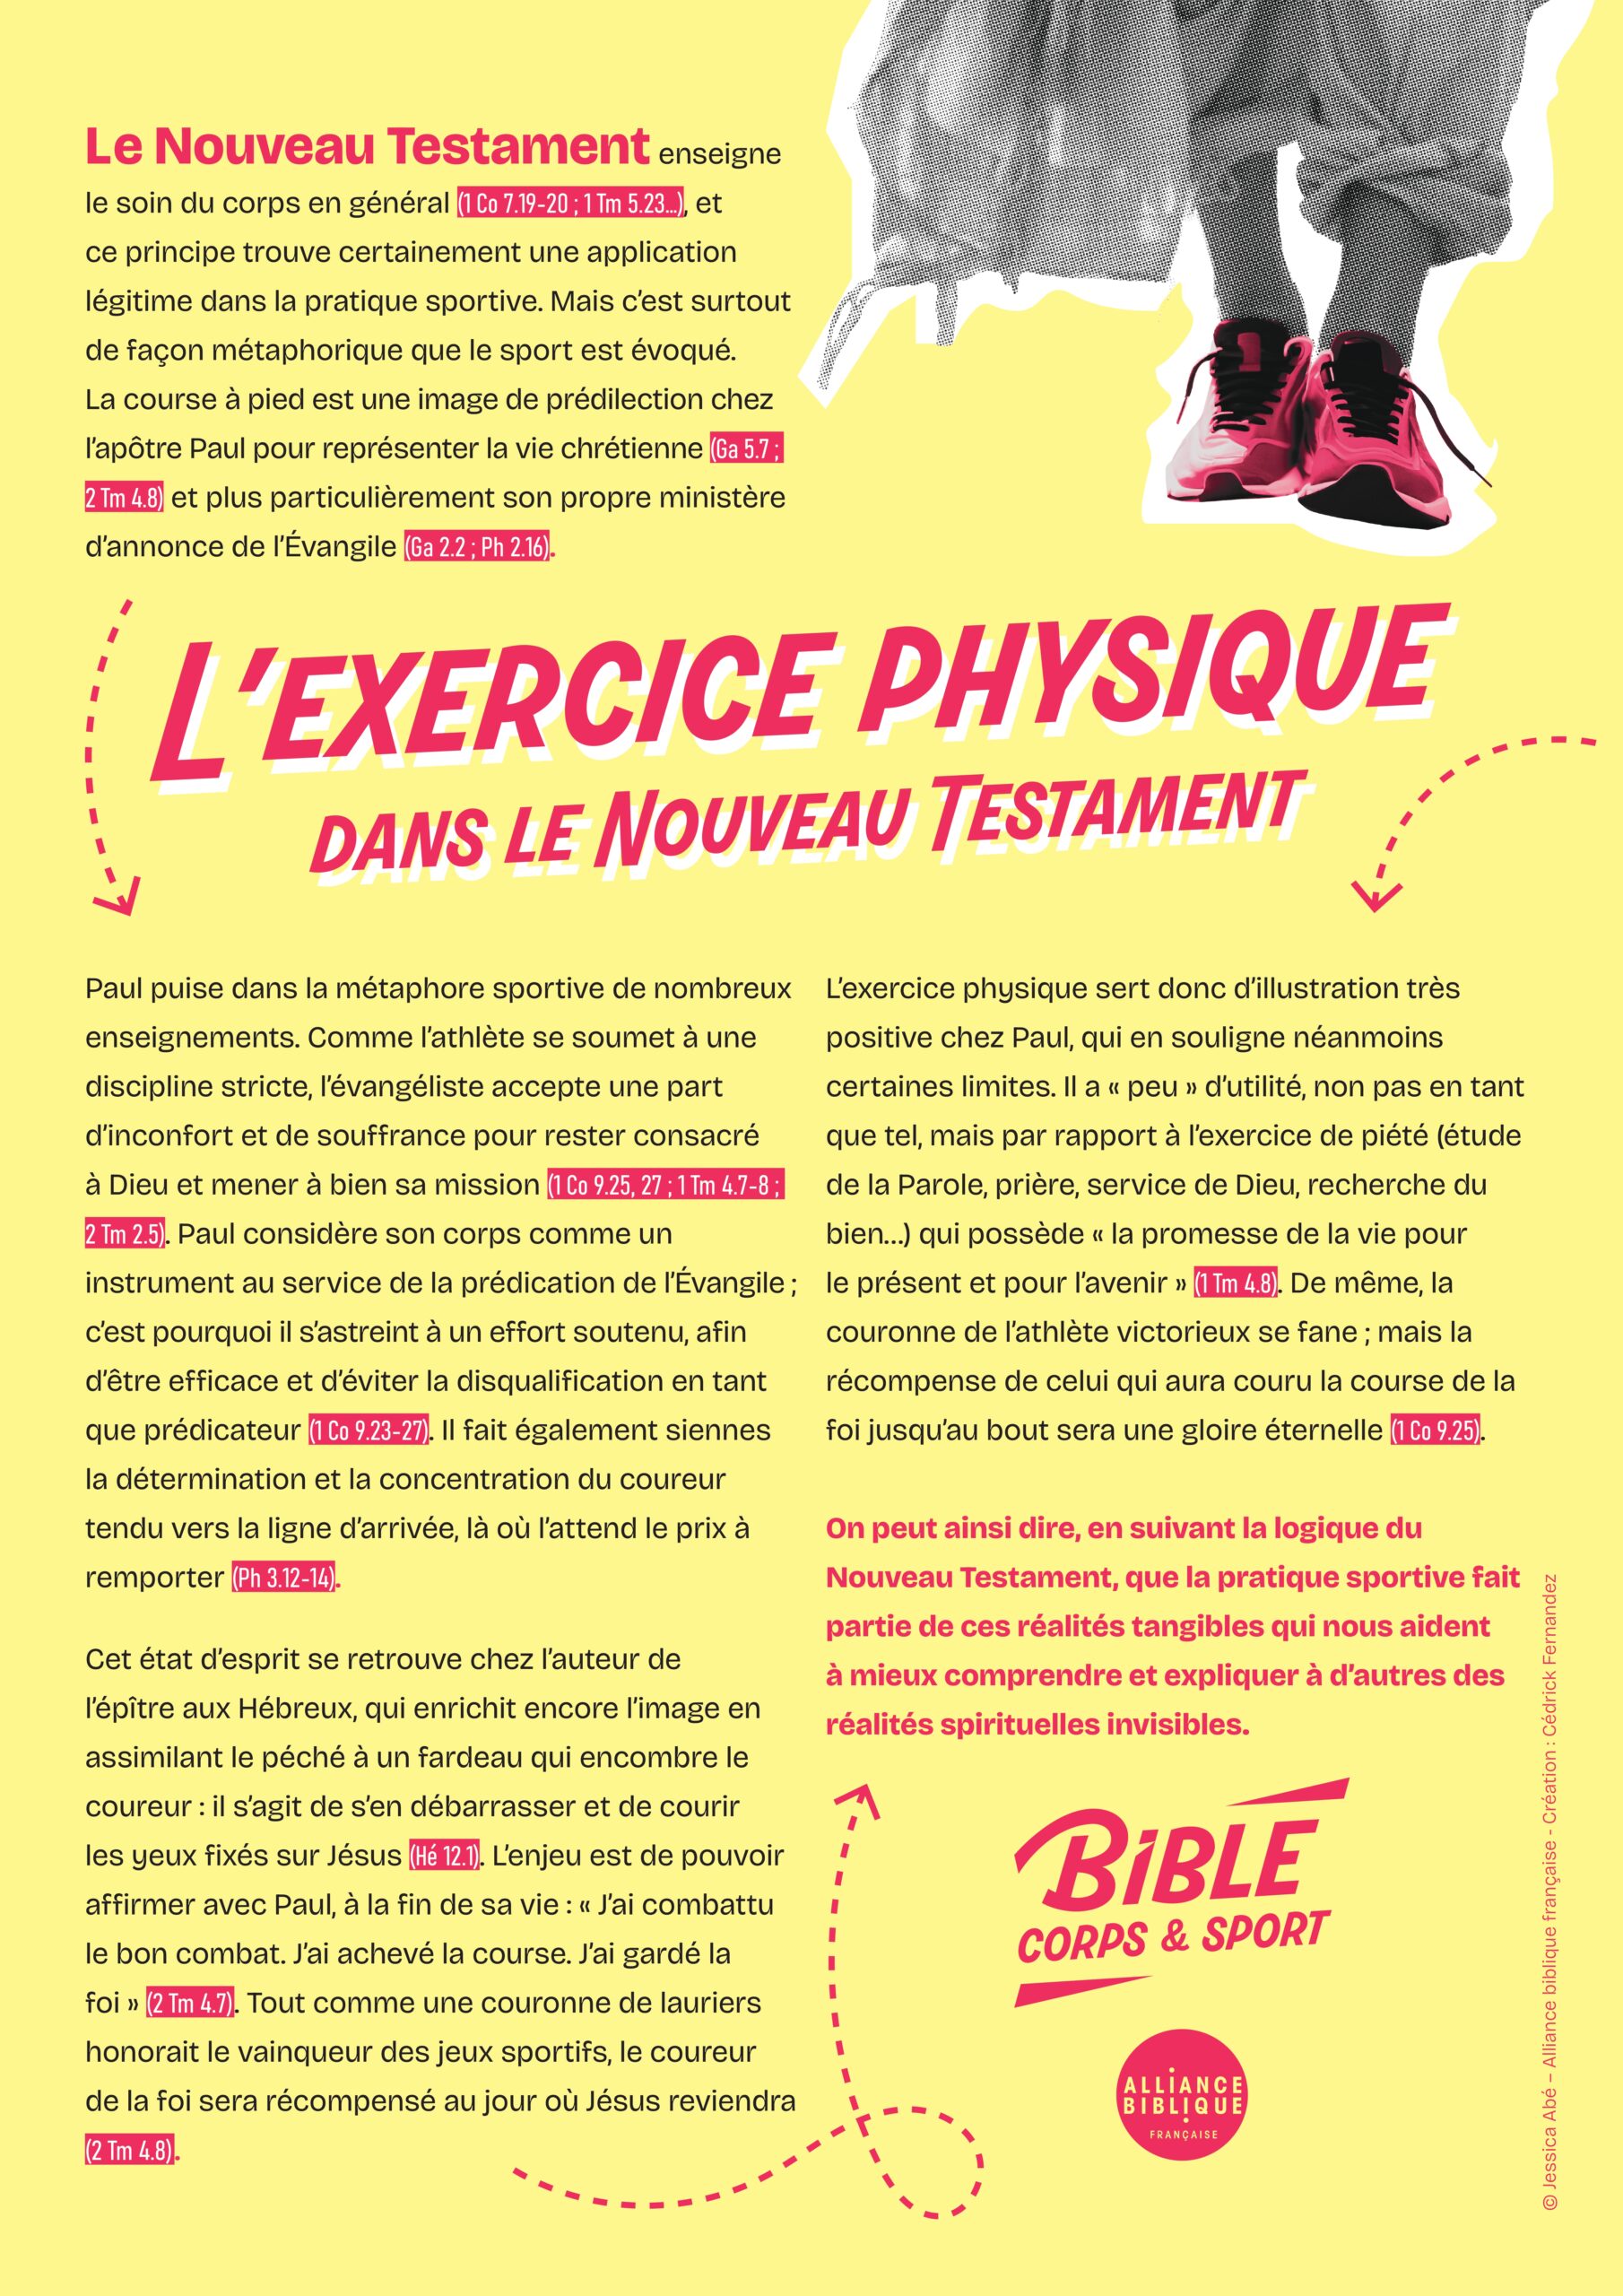 L'exercice physique dans le Nouveau Testament